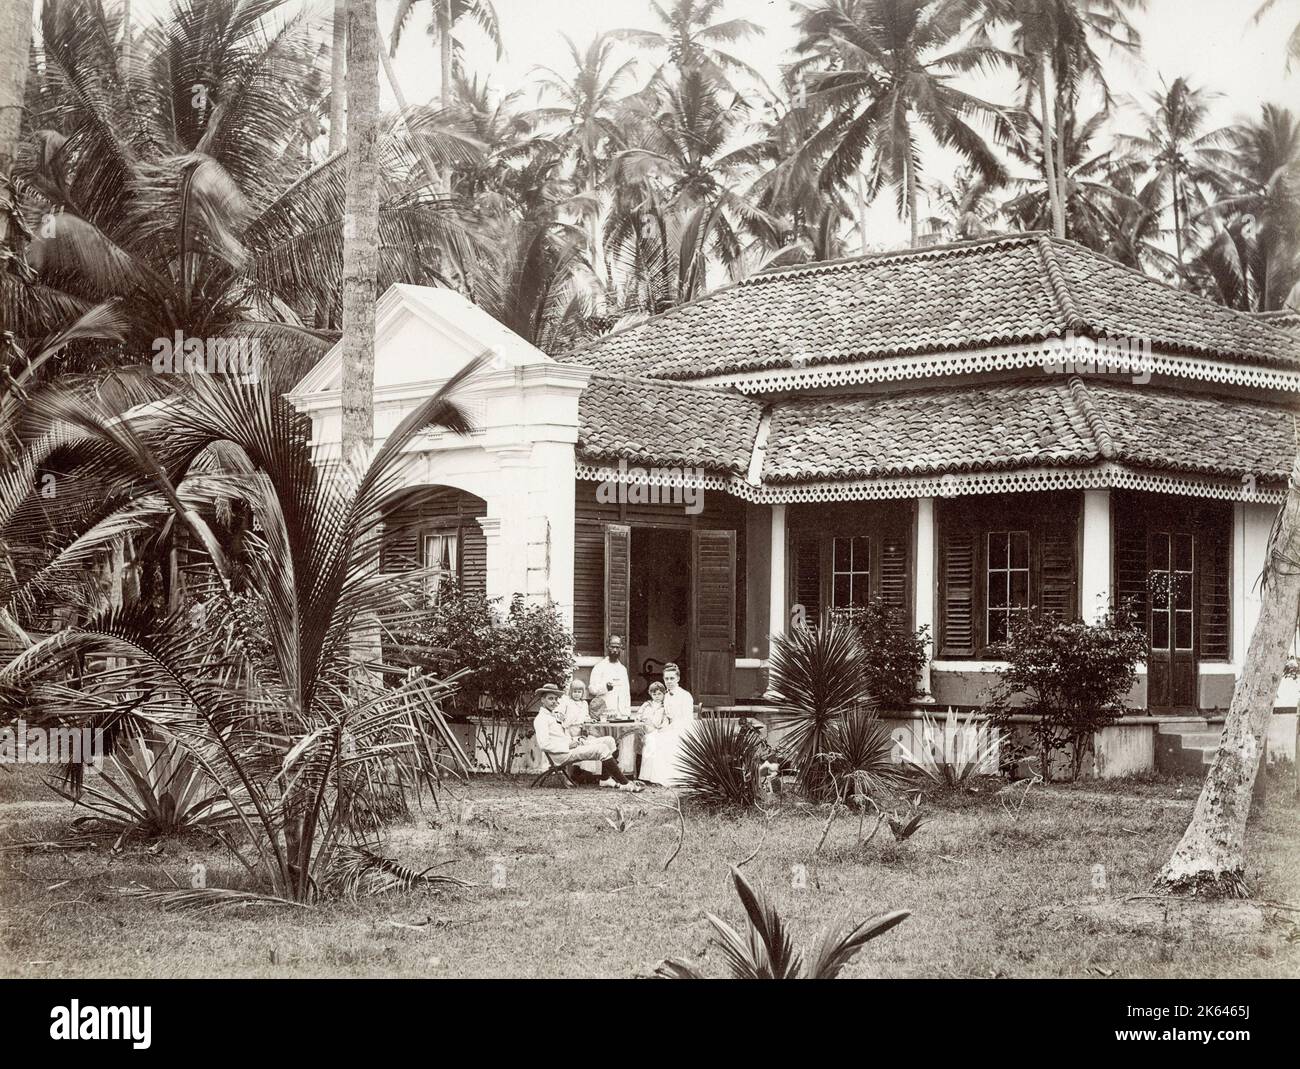 Vintage 19. Jahrhundert Foto - Europäische Familie außerhalb ihrer kolonialen Bungalow, mit einem Diener, Singapur oder Südost-asiatischen Ort. Stockfoto